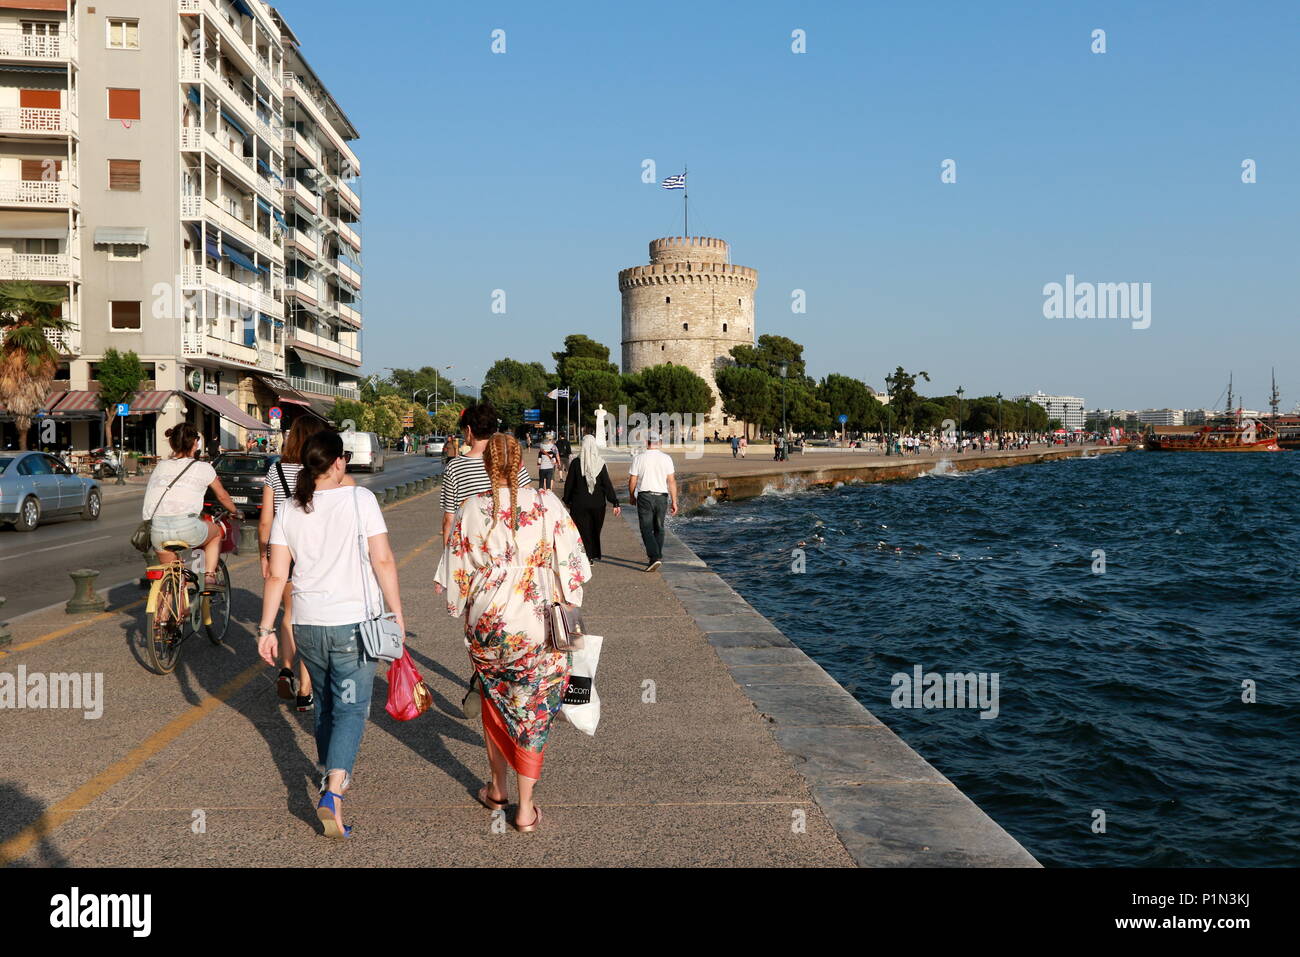 Lungomare promenada con la torre bianca in background in Salonicco, Grecia. Foto Stock